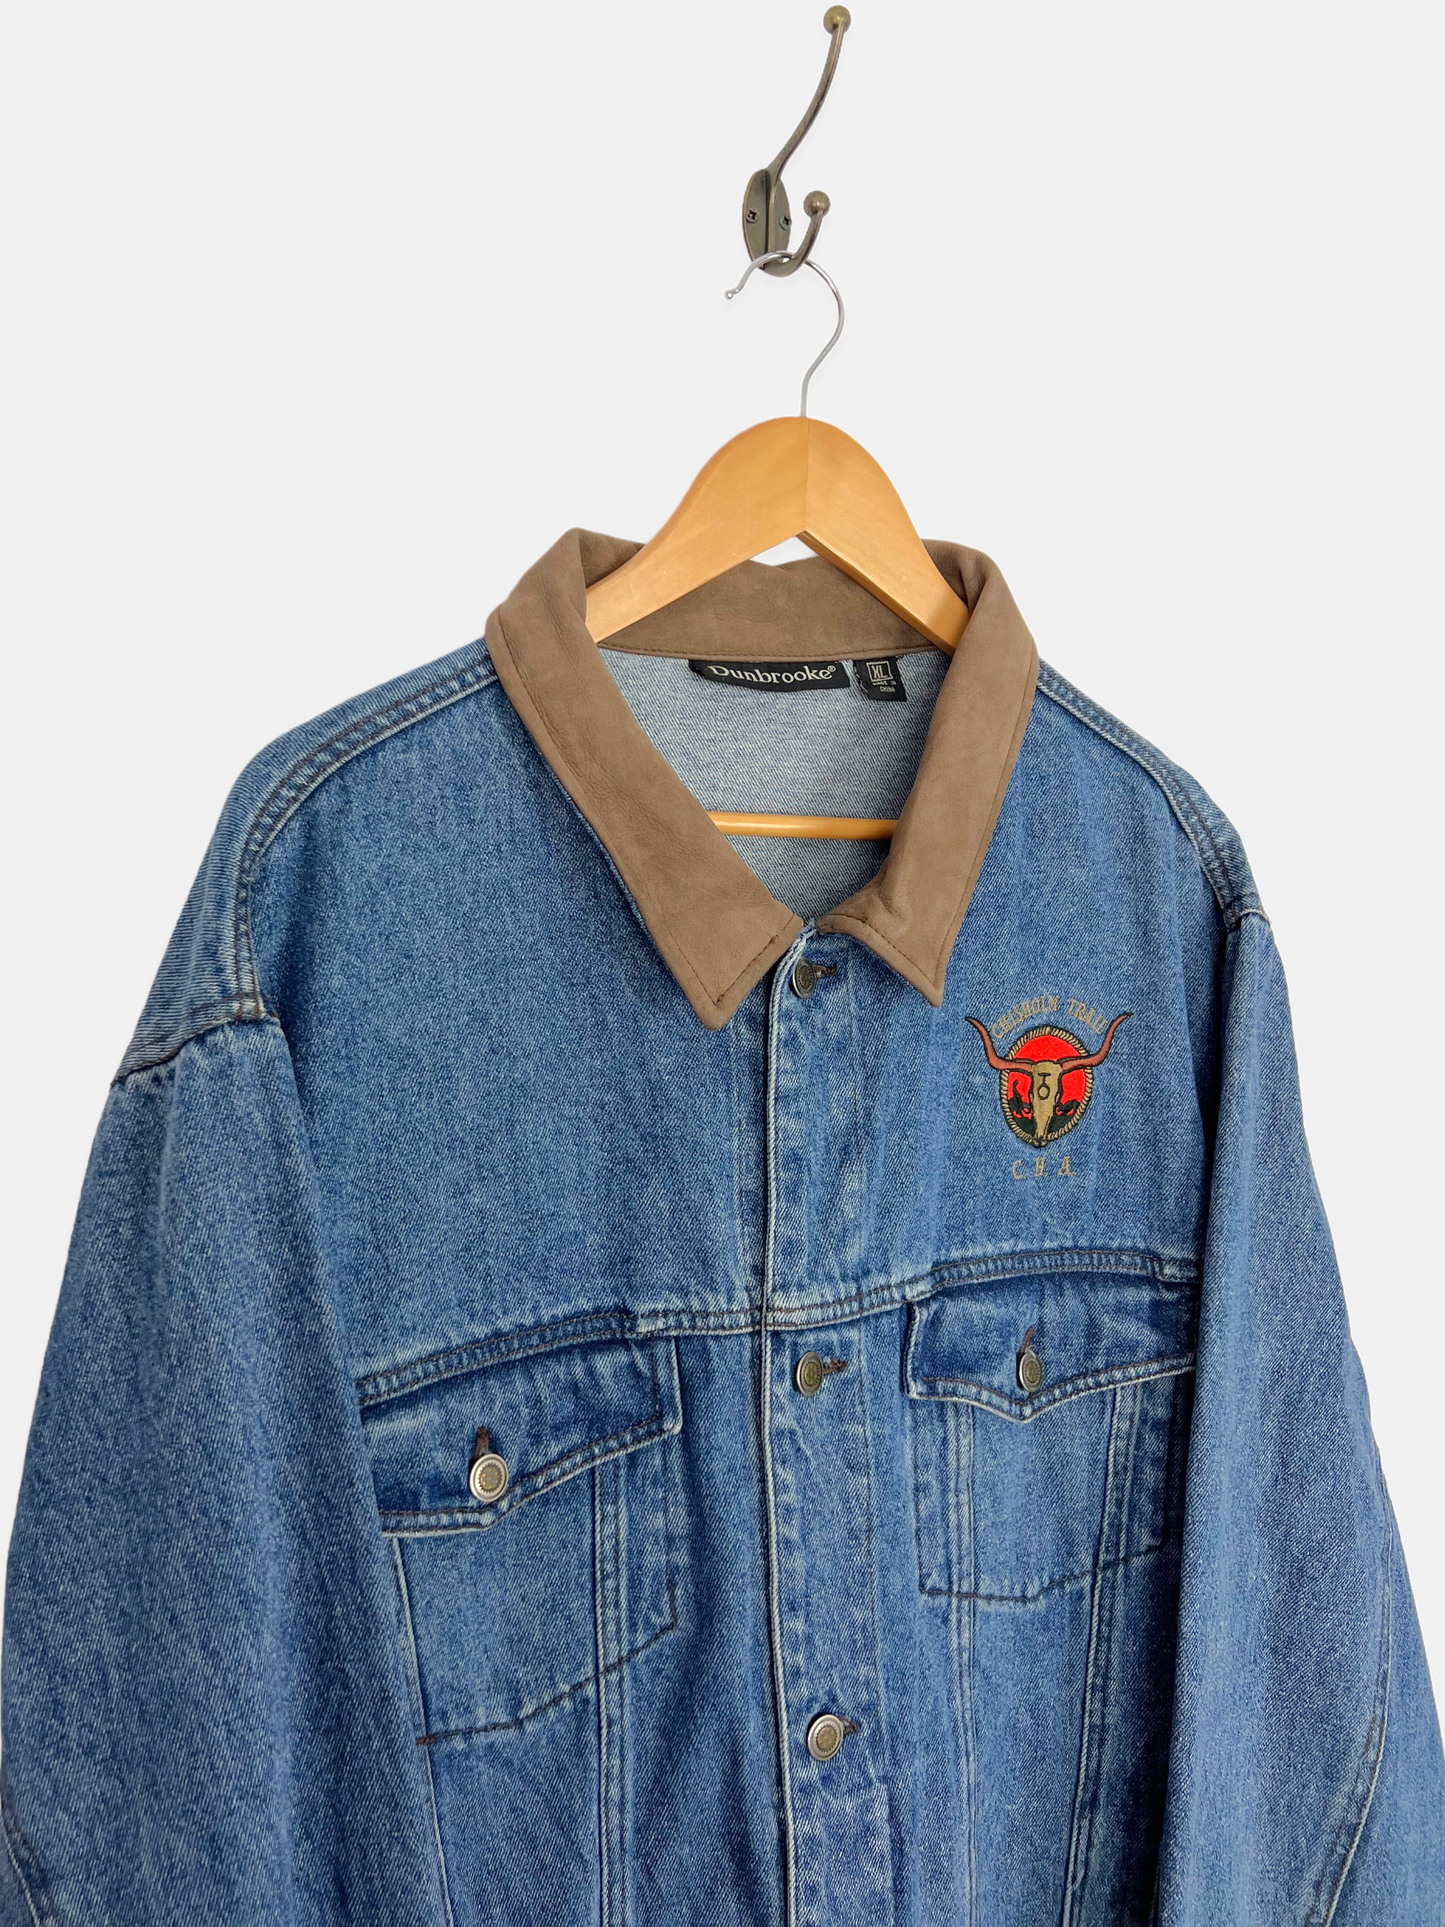 90's Chisholm Trail Embroidered Vintage Denim Jacket Size XL